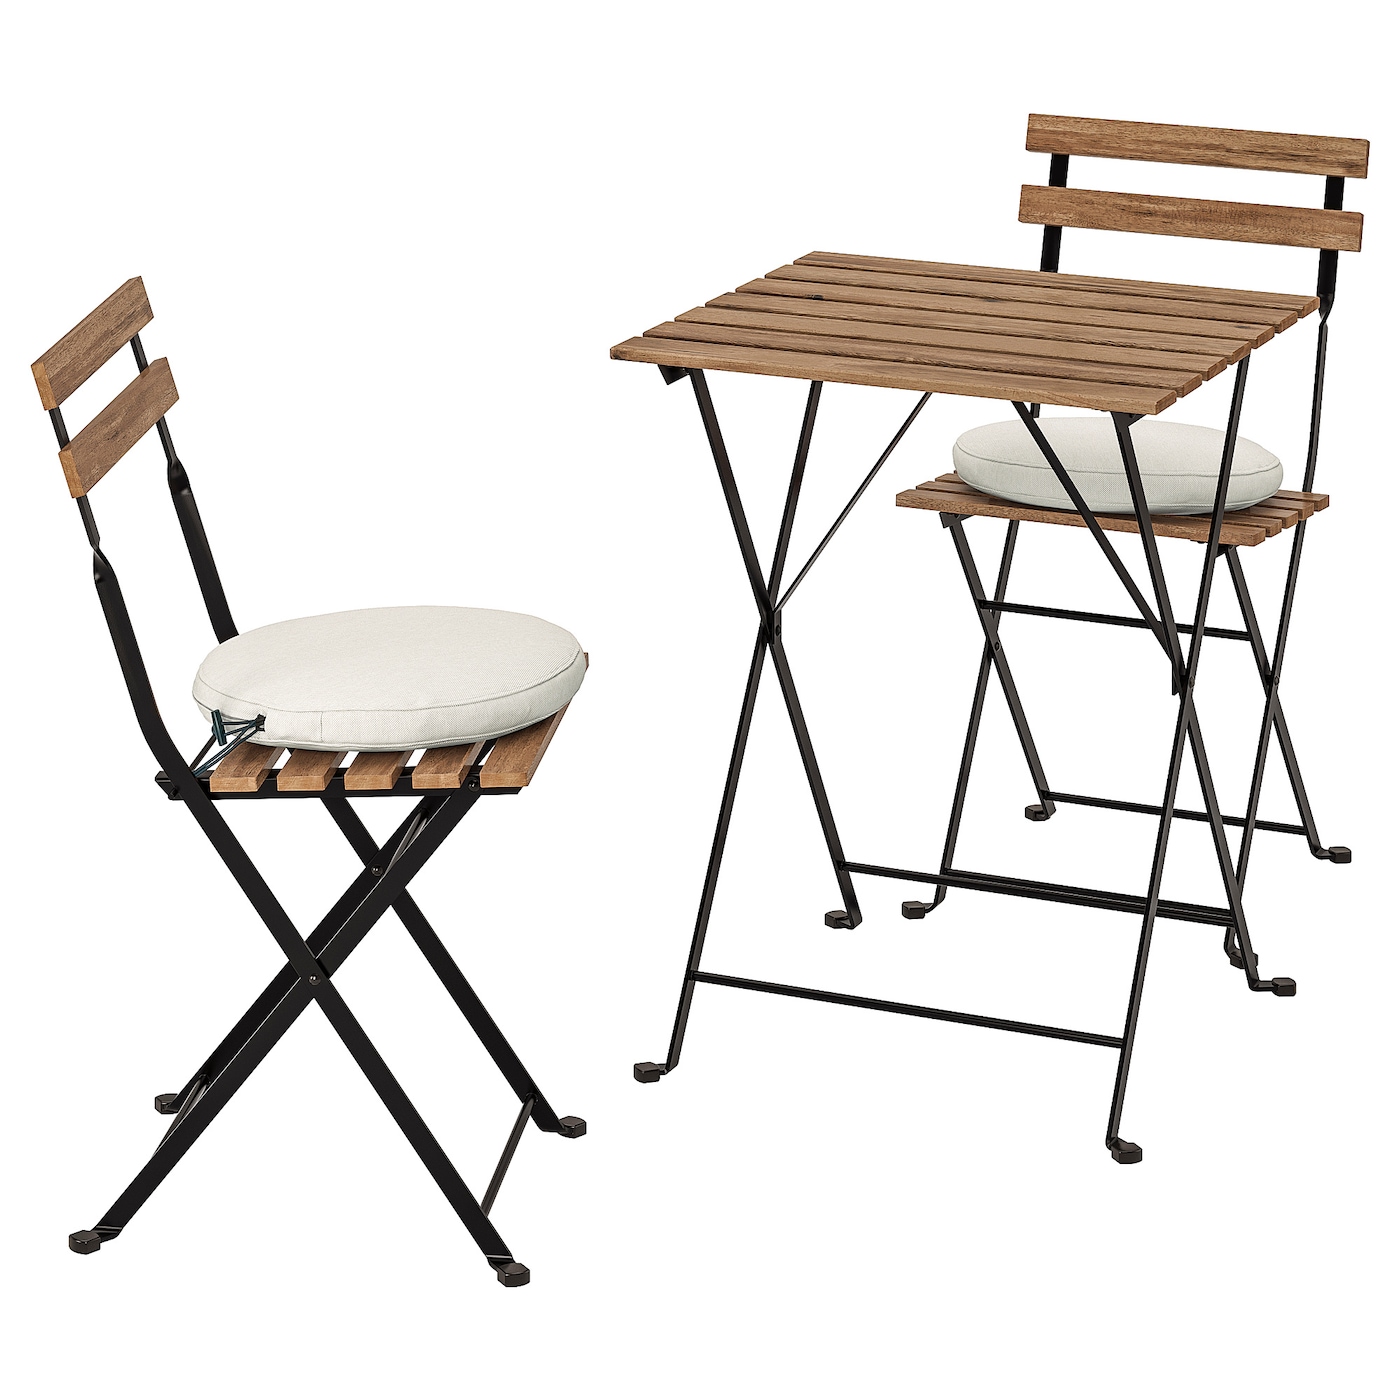 Складной комплект стула и стола - TÄRNÖ /TАRNО IKEA/ТЭРНО ИКЕА, 93х39х9 см, коричневый/белый